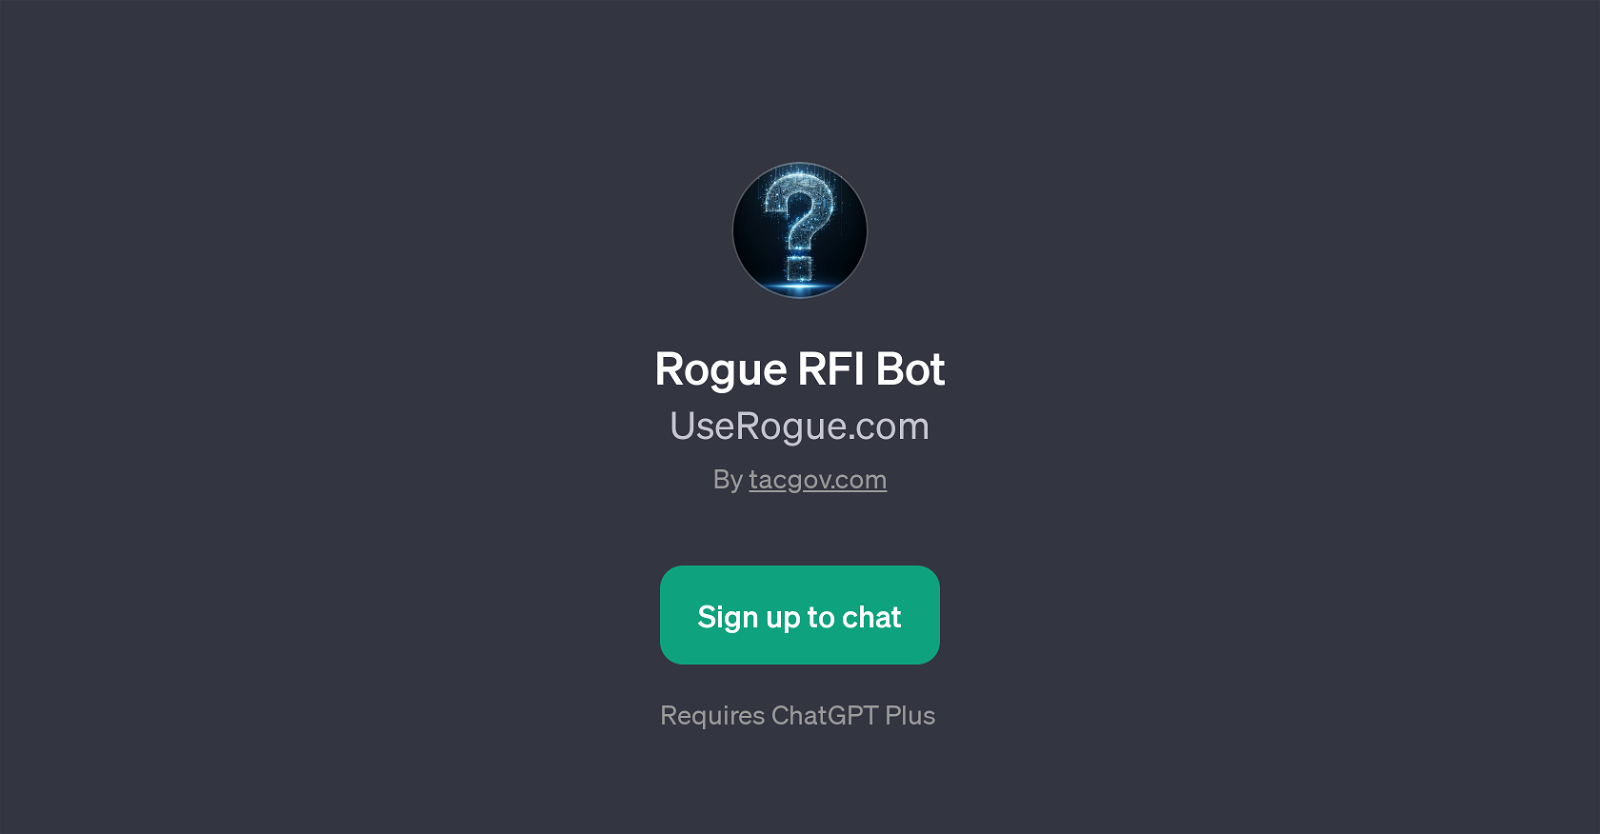 Rogue RFI Bot website